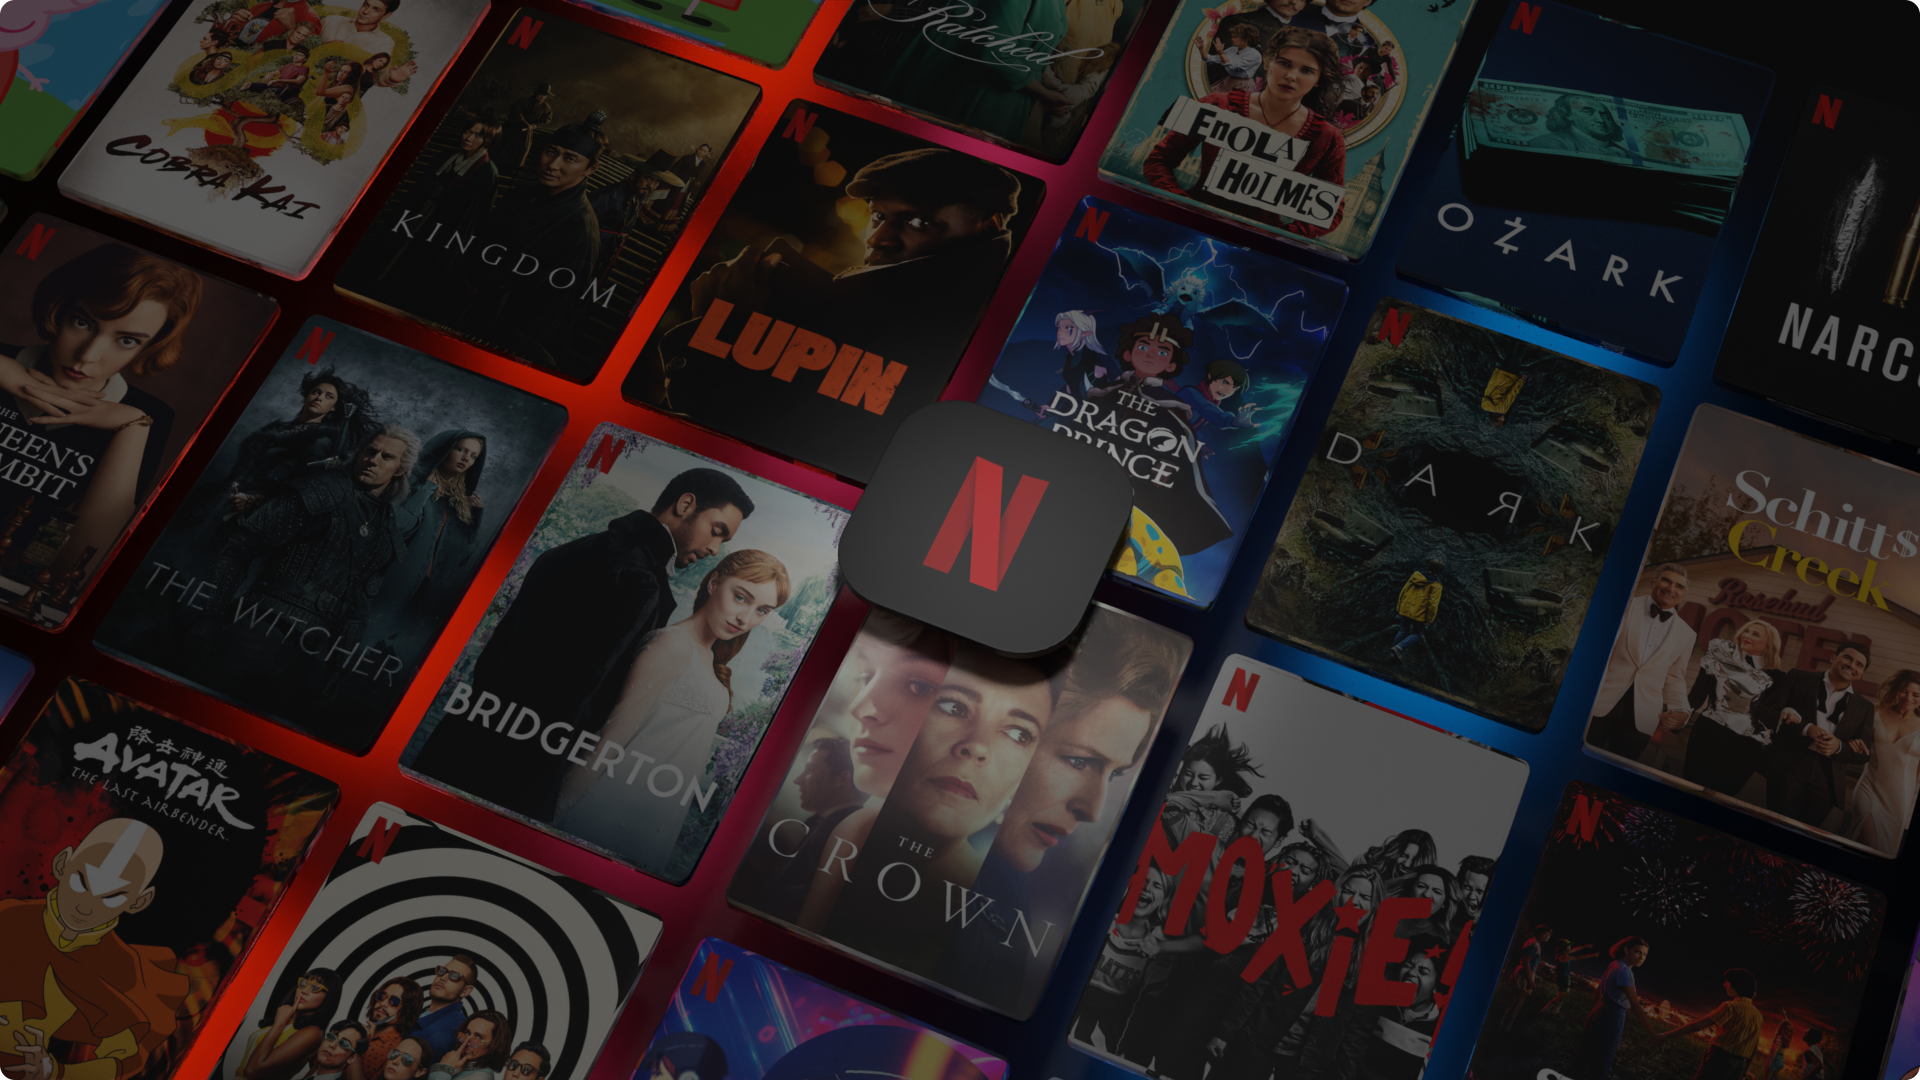 Netflix thử nghiệm tính phí chia sẻ tài khoản